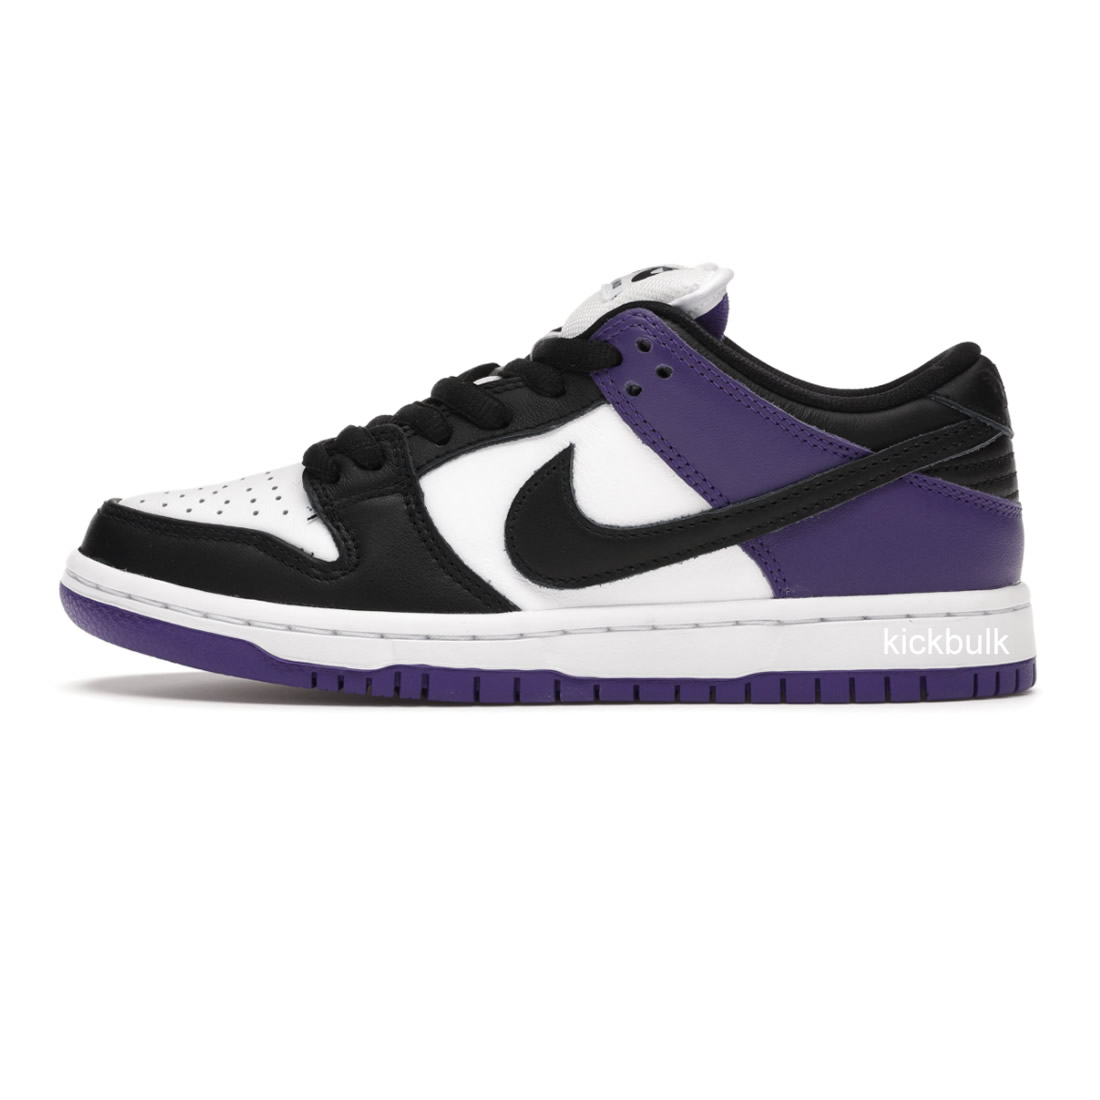 Nike Sb Dunk Low Court Purple Bq6817 500 1 - kickbulk.org